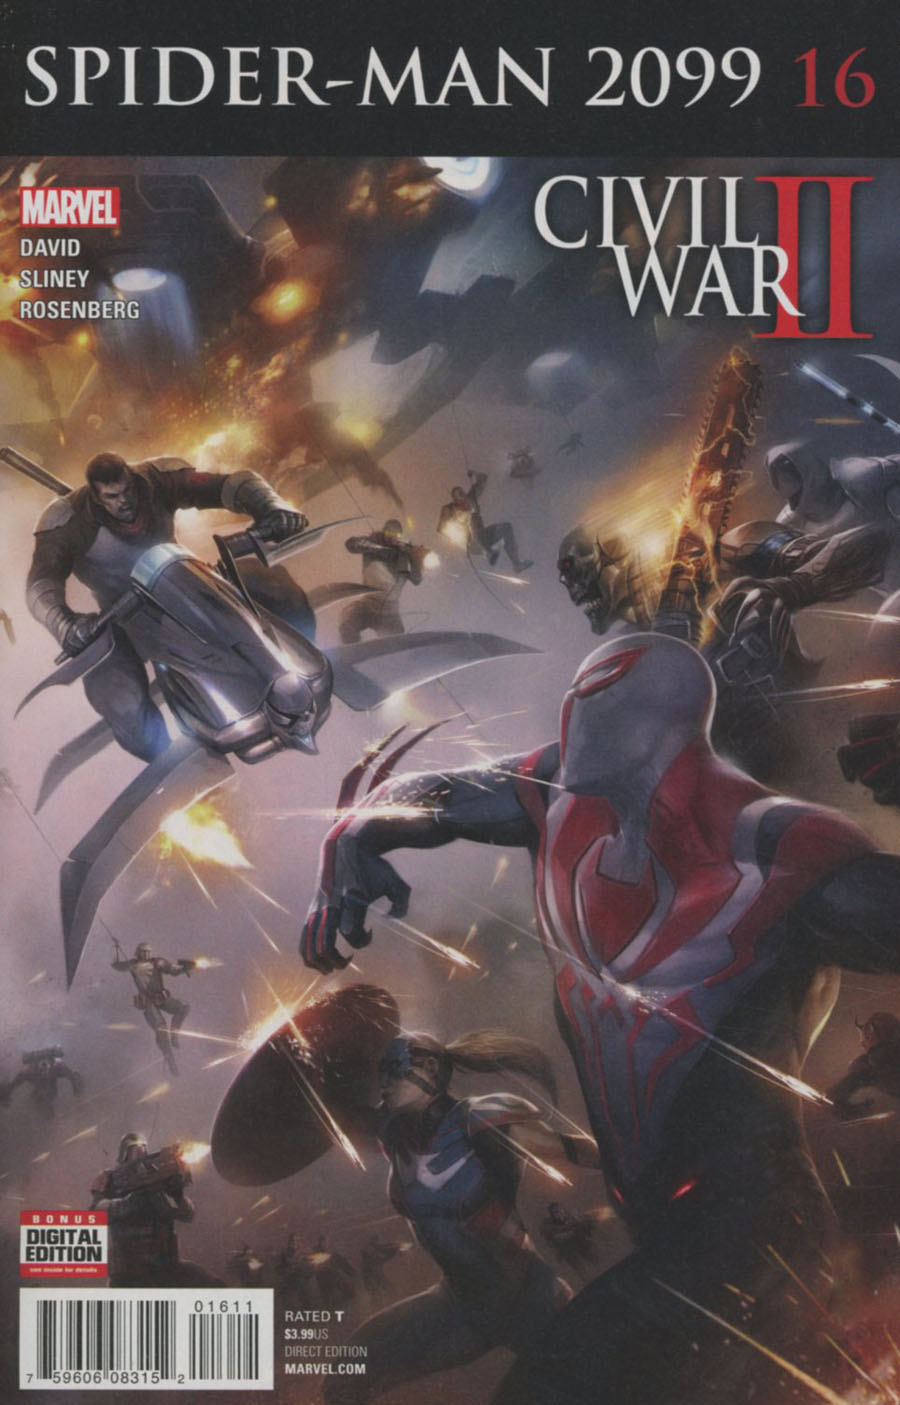 Spider-Man 2099 Vol 3 #16 (Civil War II Tie-In)